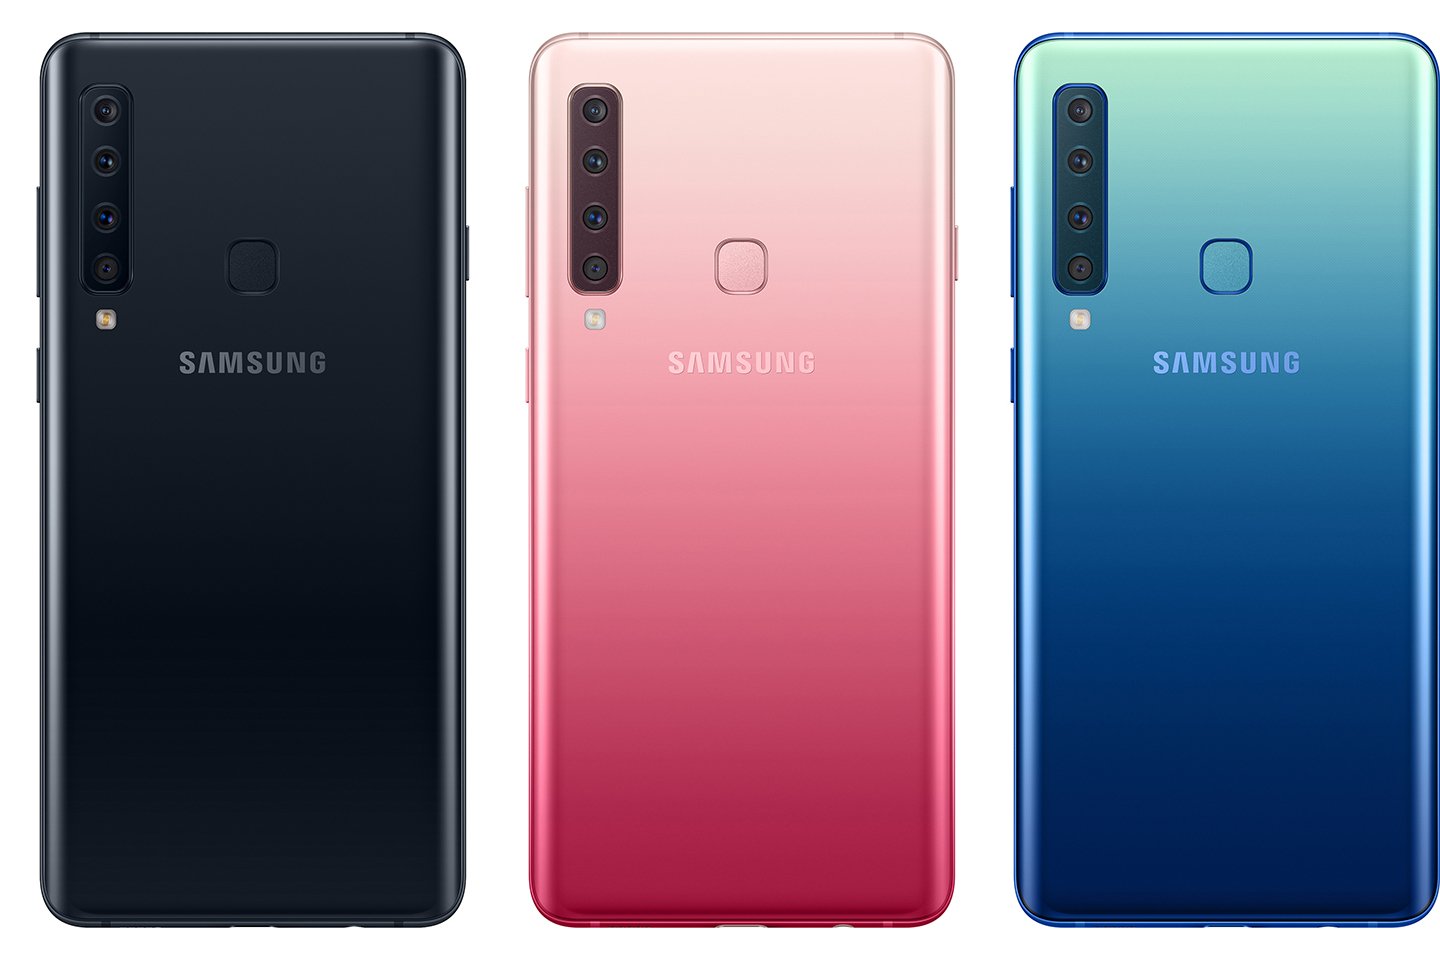 ‘Samsung’- Lança no Brasil o Galaxy A9 com 4 câmeras traseiras